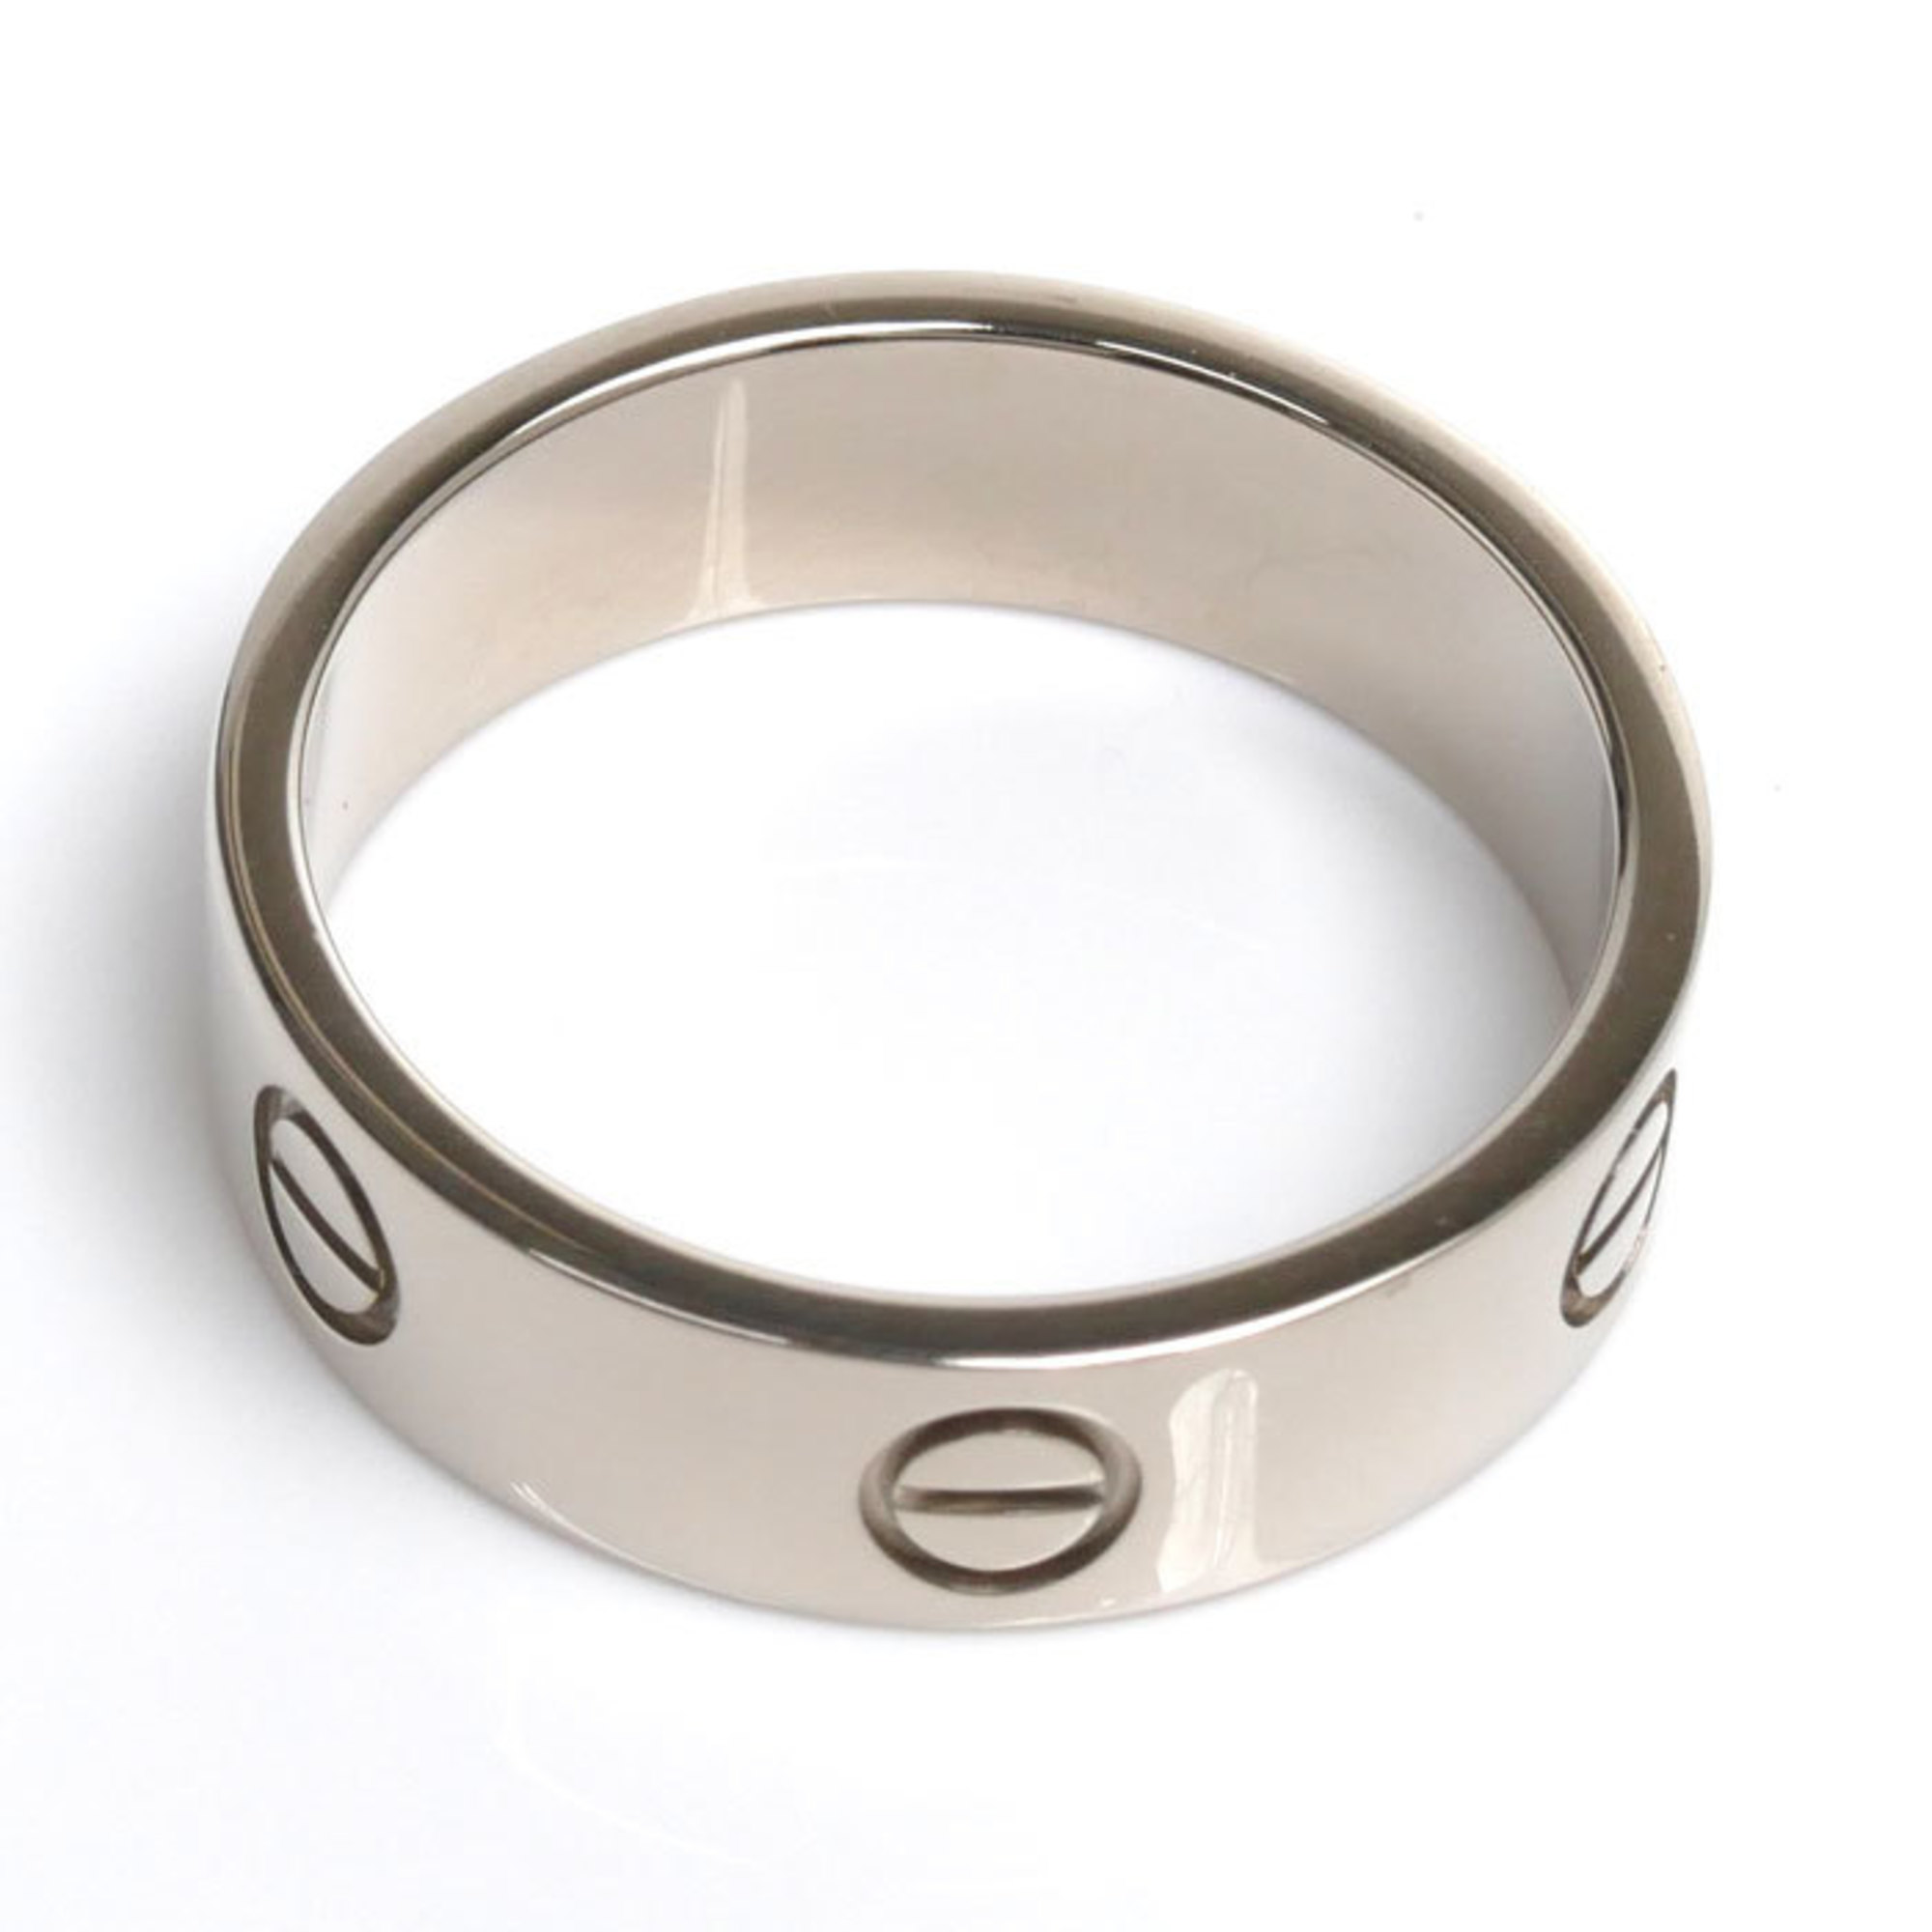 CARTIER K18WG White Gold Love Ring, Size 18.5, 59, 8.4g, Men's